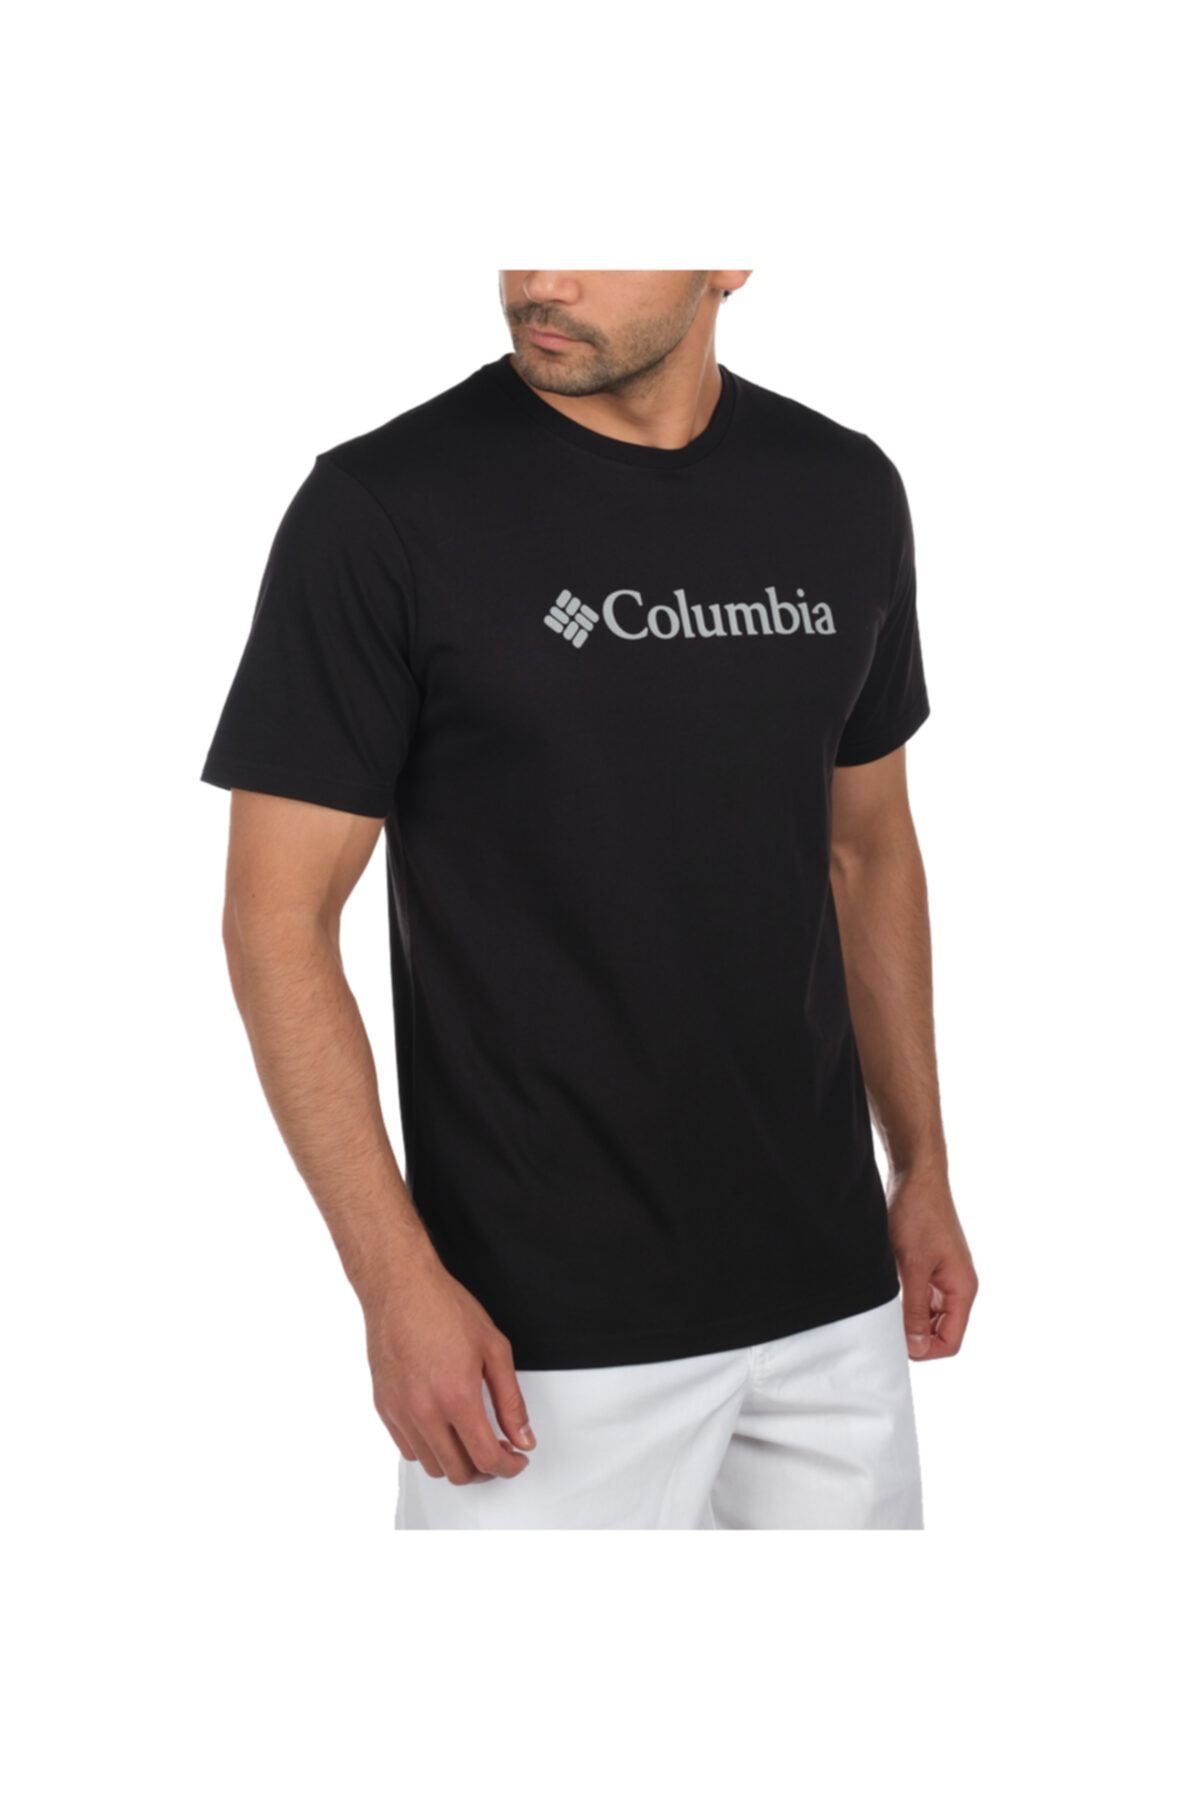 تی شرت مردانه آستین کوتاه مشکی کلمبیا Columbia (برند آمریکا)